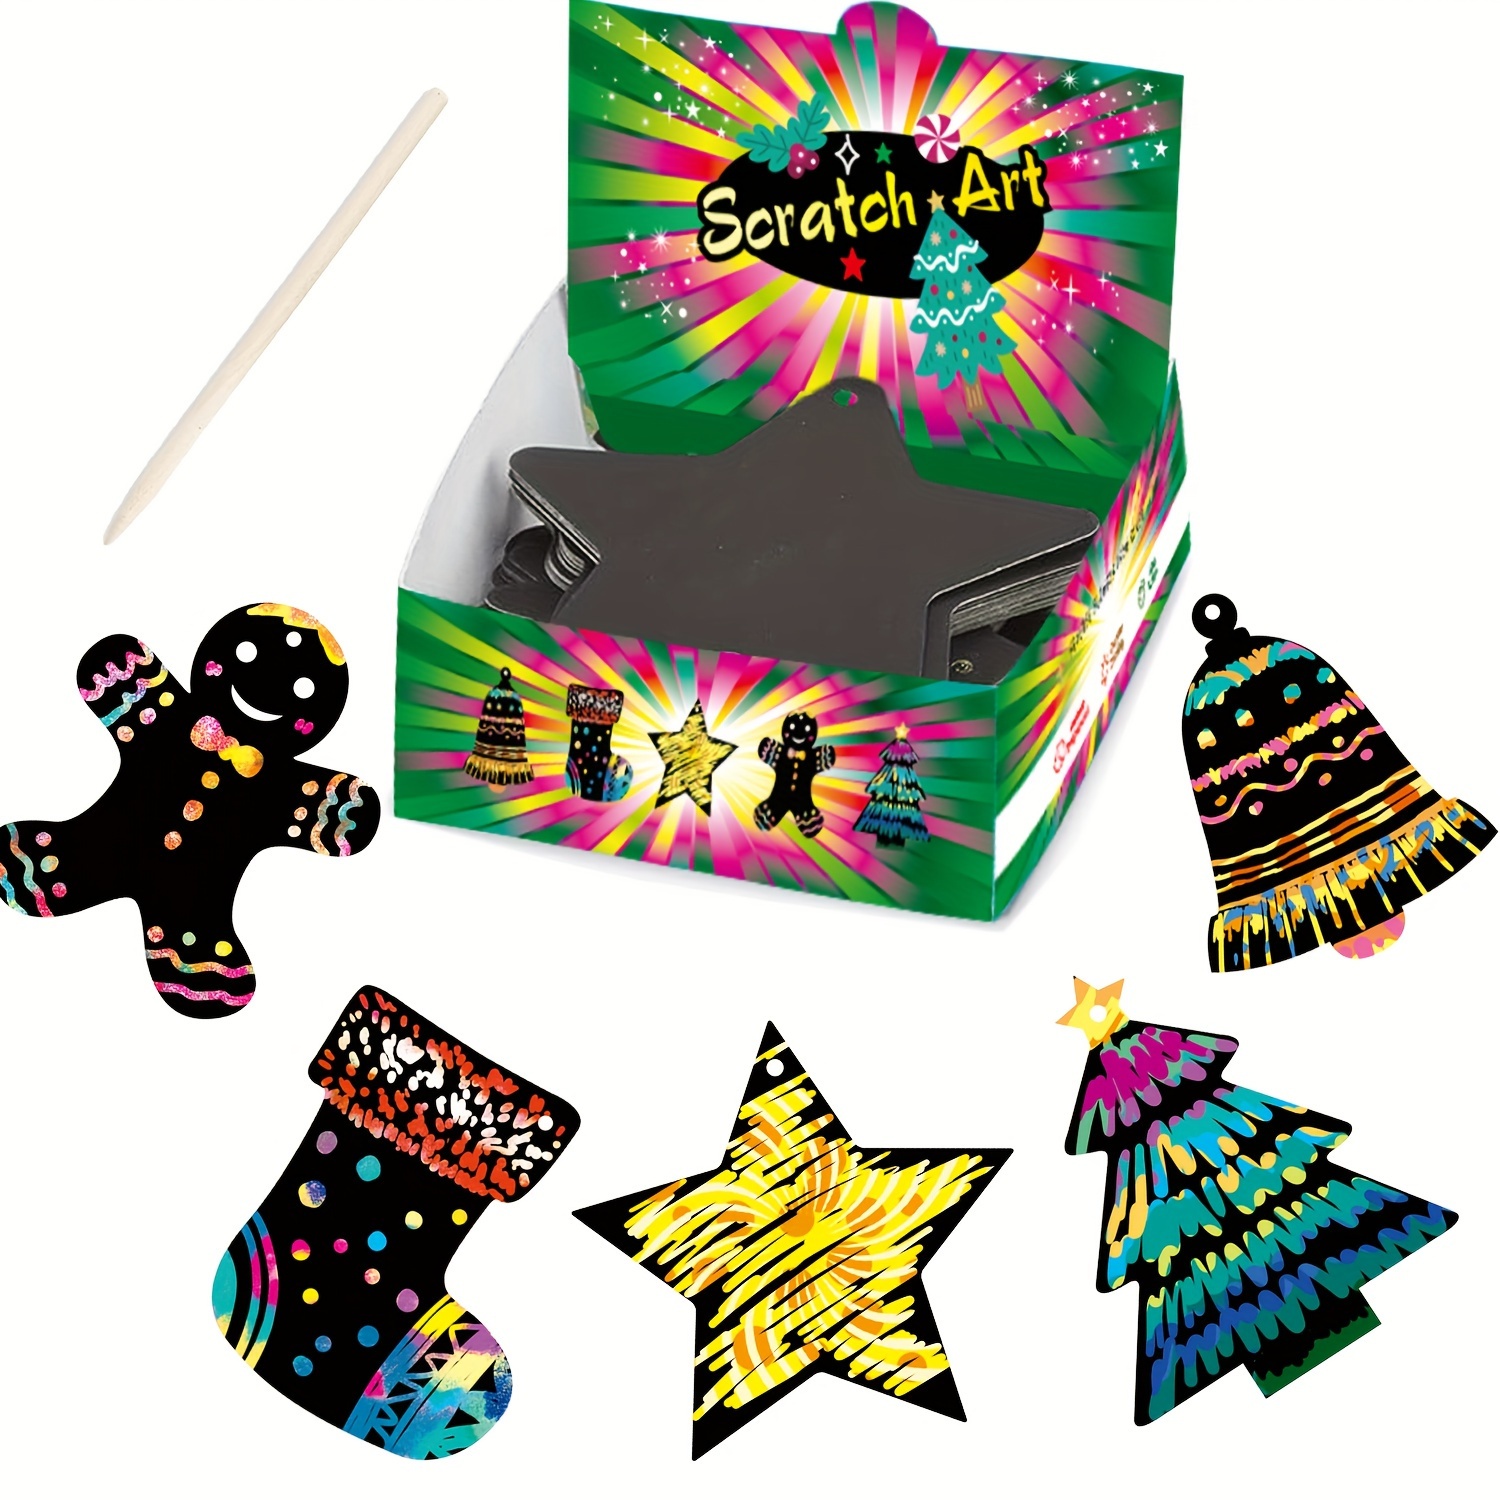 Kids Scratch Art /mini Rainbow Scratch Paper Tape Stylus - Temu Austria